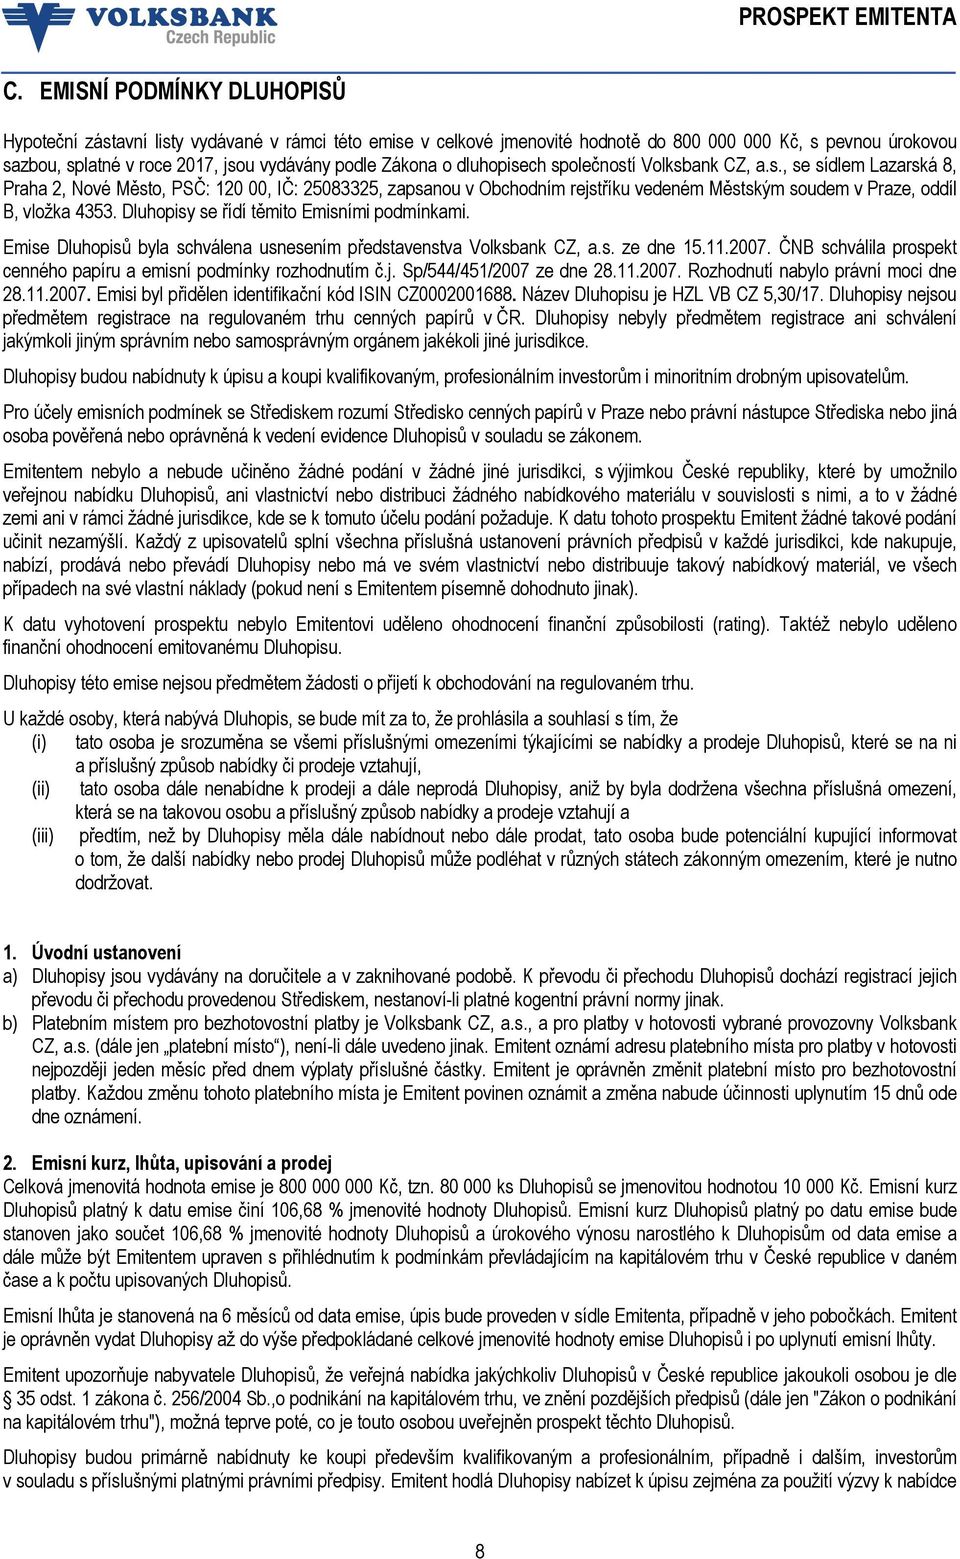 Dluhopisy se řídí těmito Emisními podmínkami. Emise Dluhopisů byla schválena usnesením představenstva Volksbank CZ, a.s. ze dne 15.11.2007.